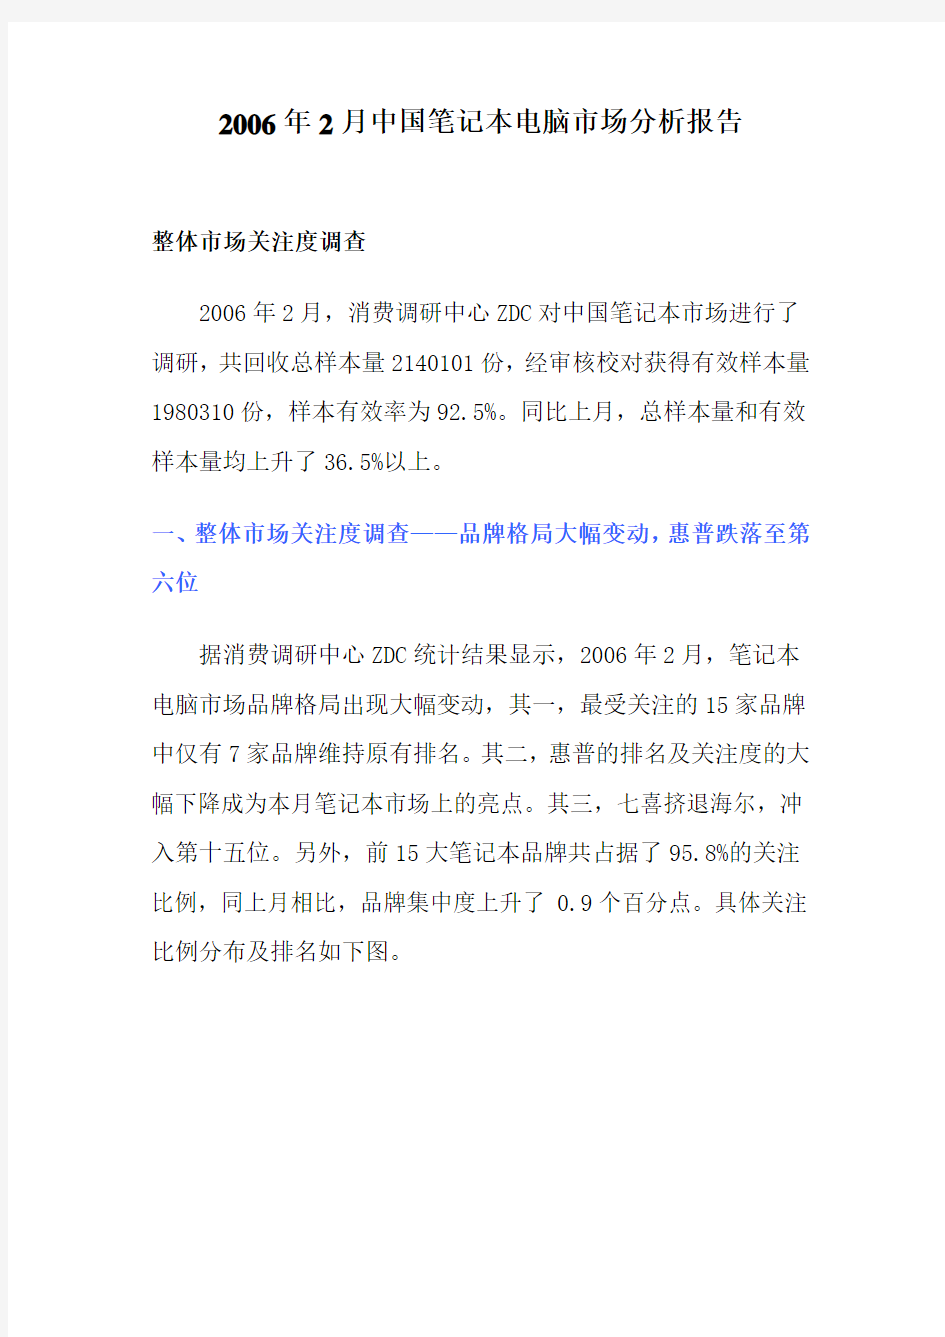 中国笔记本电脑市场分析报告